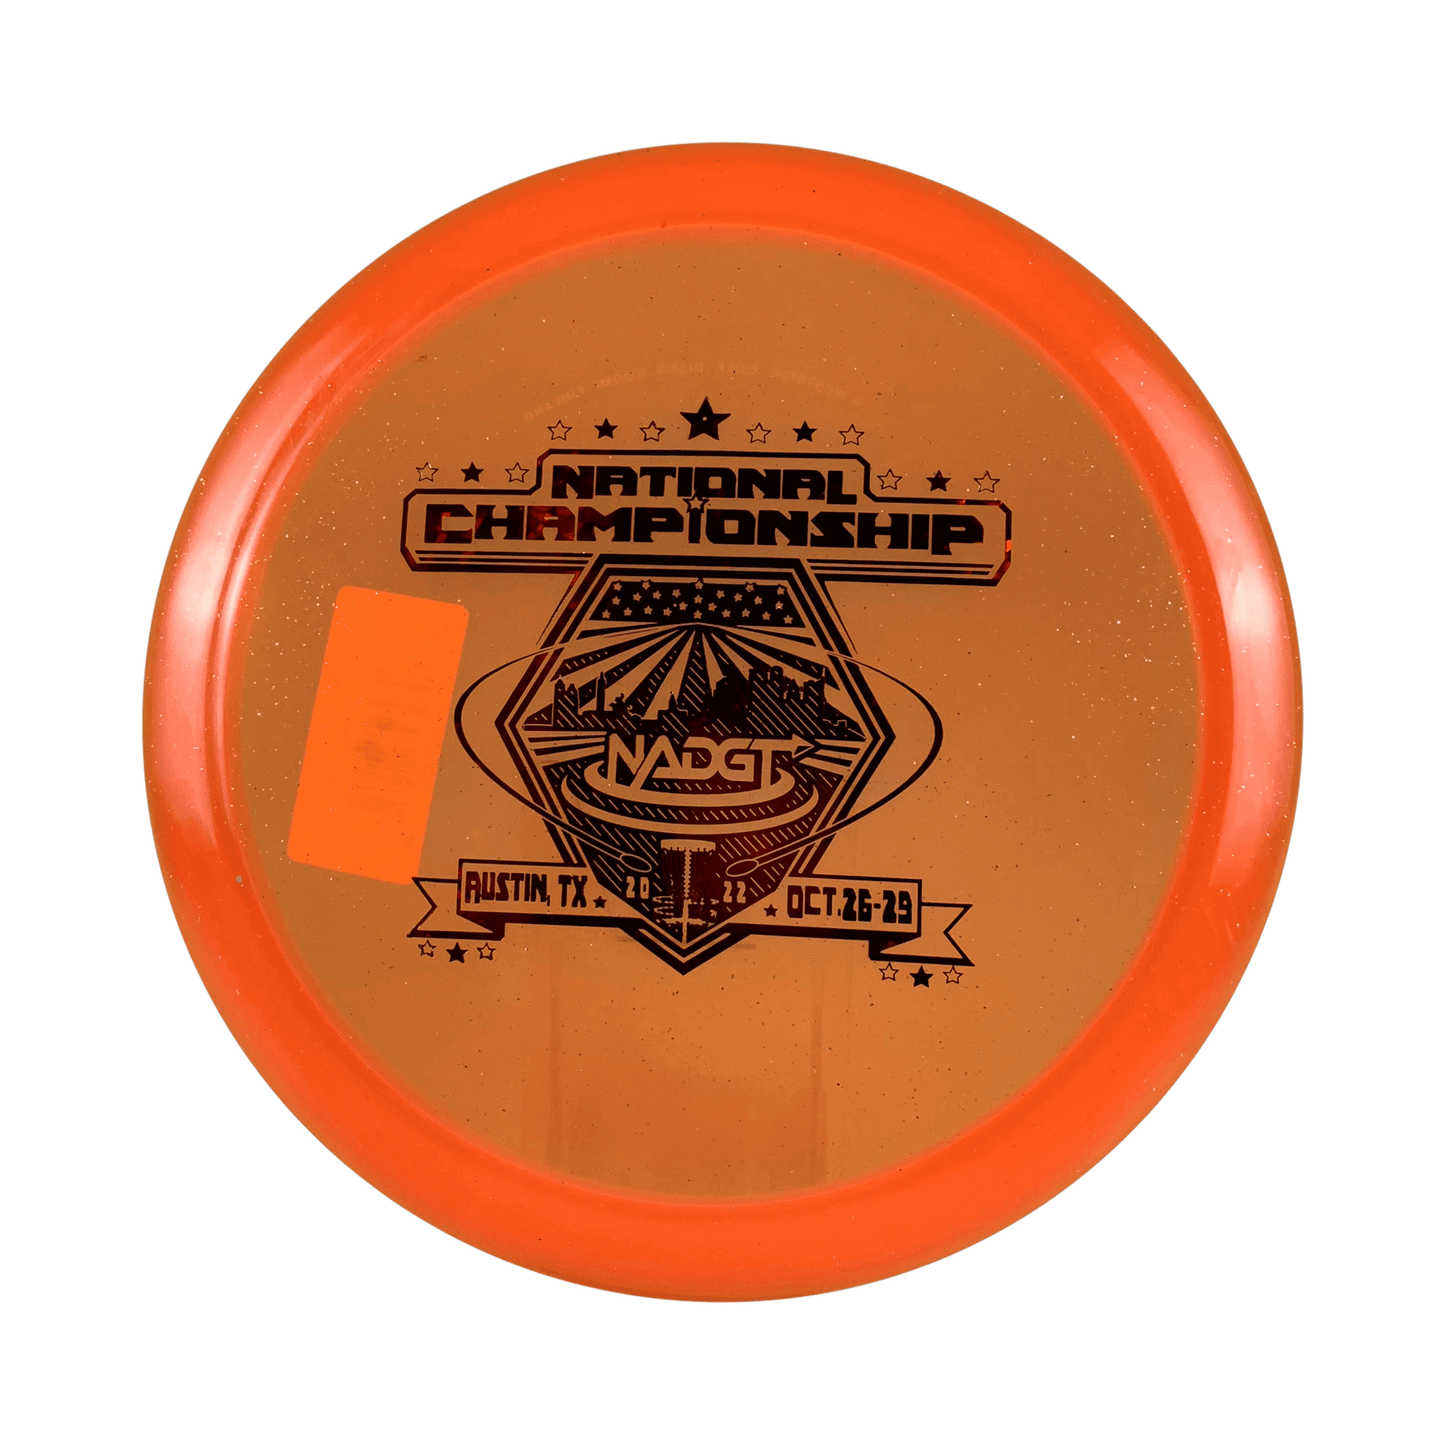 VIP Glimmer Hatchet - NADGT National Championship 2022 Disc Westside Discs orange 169 